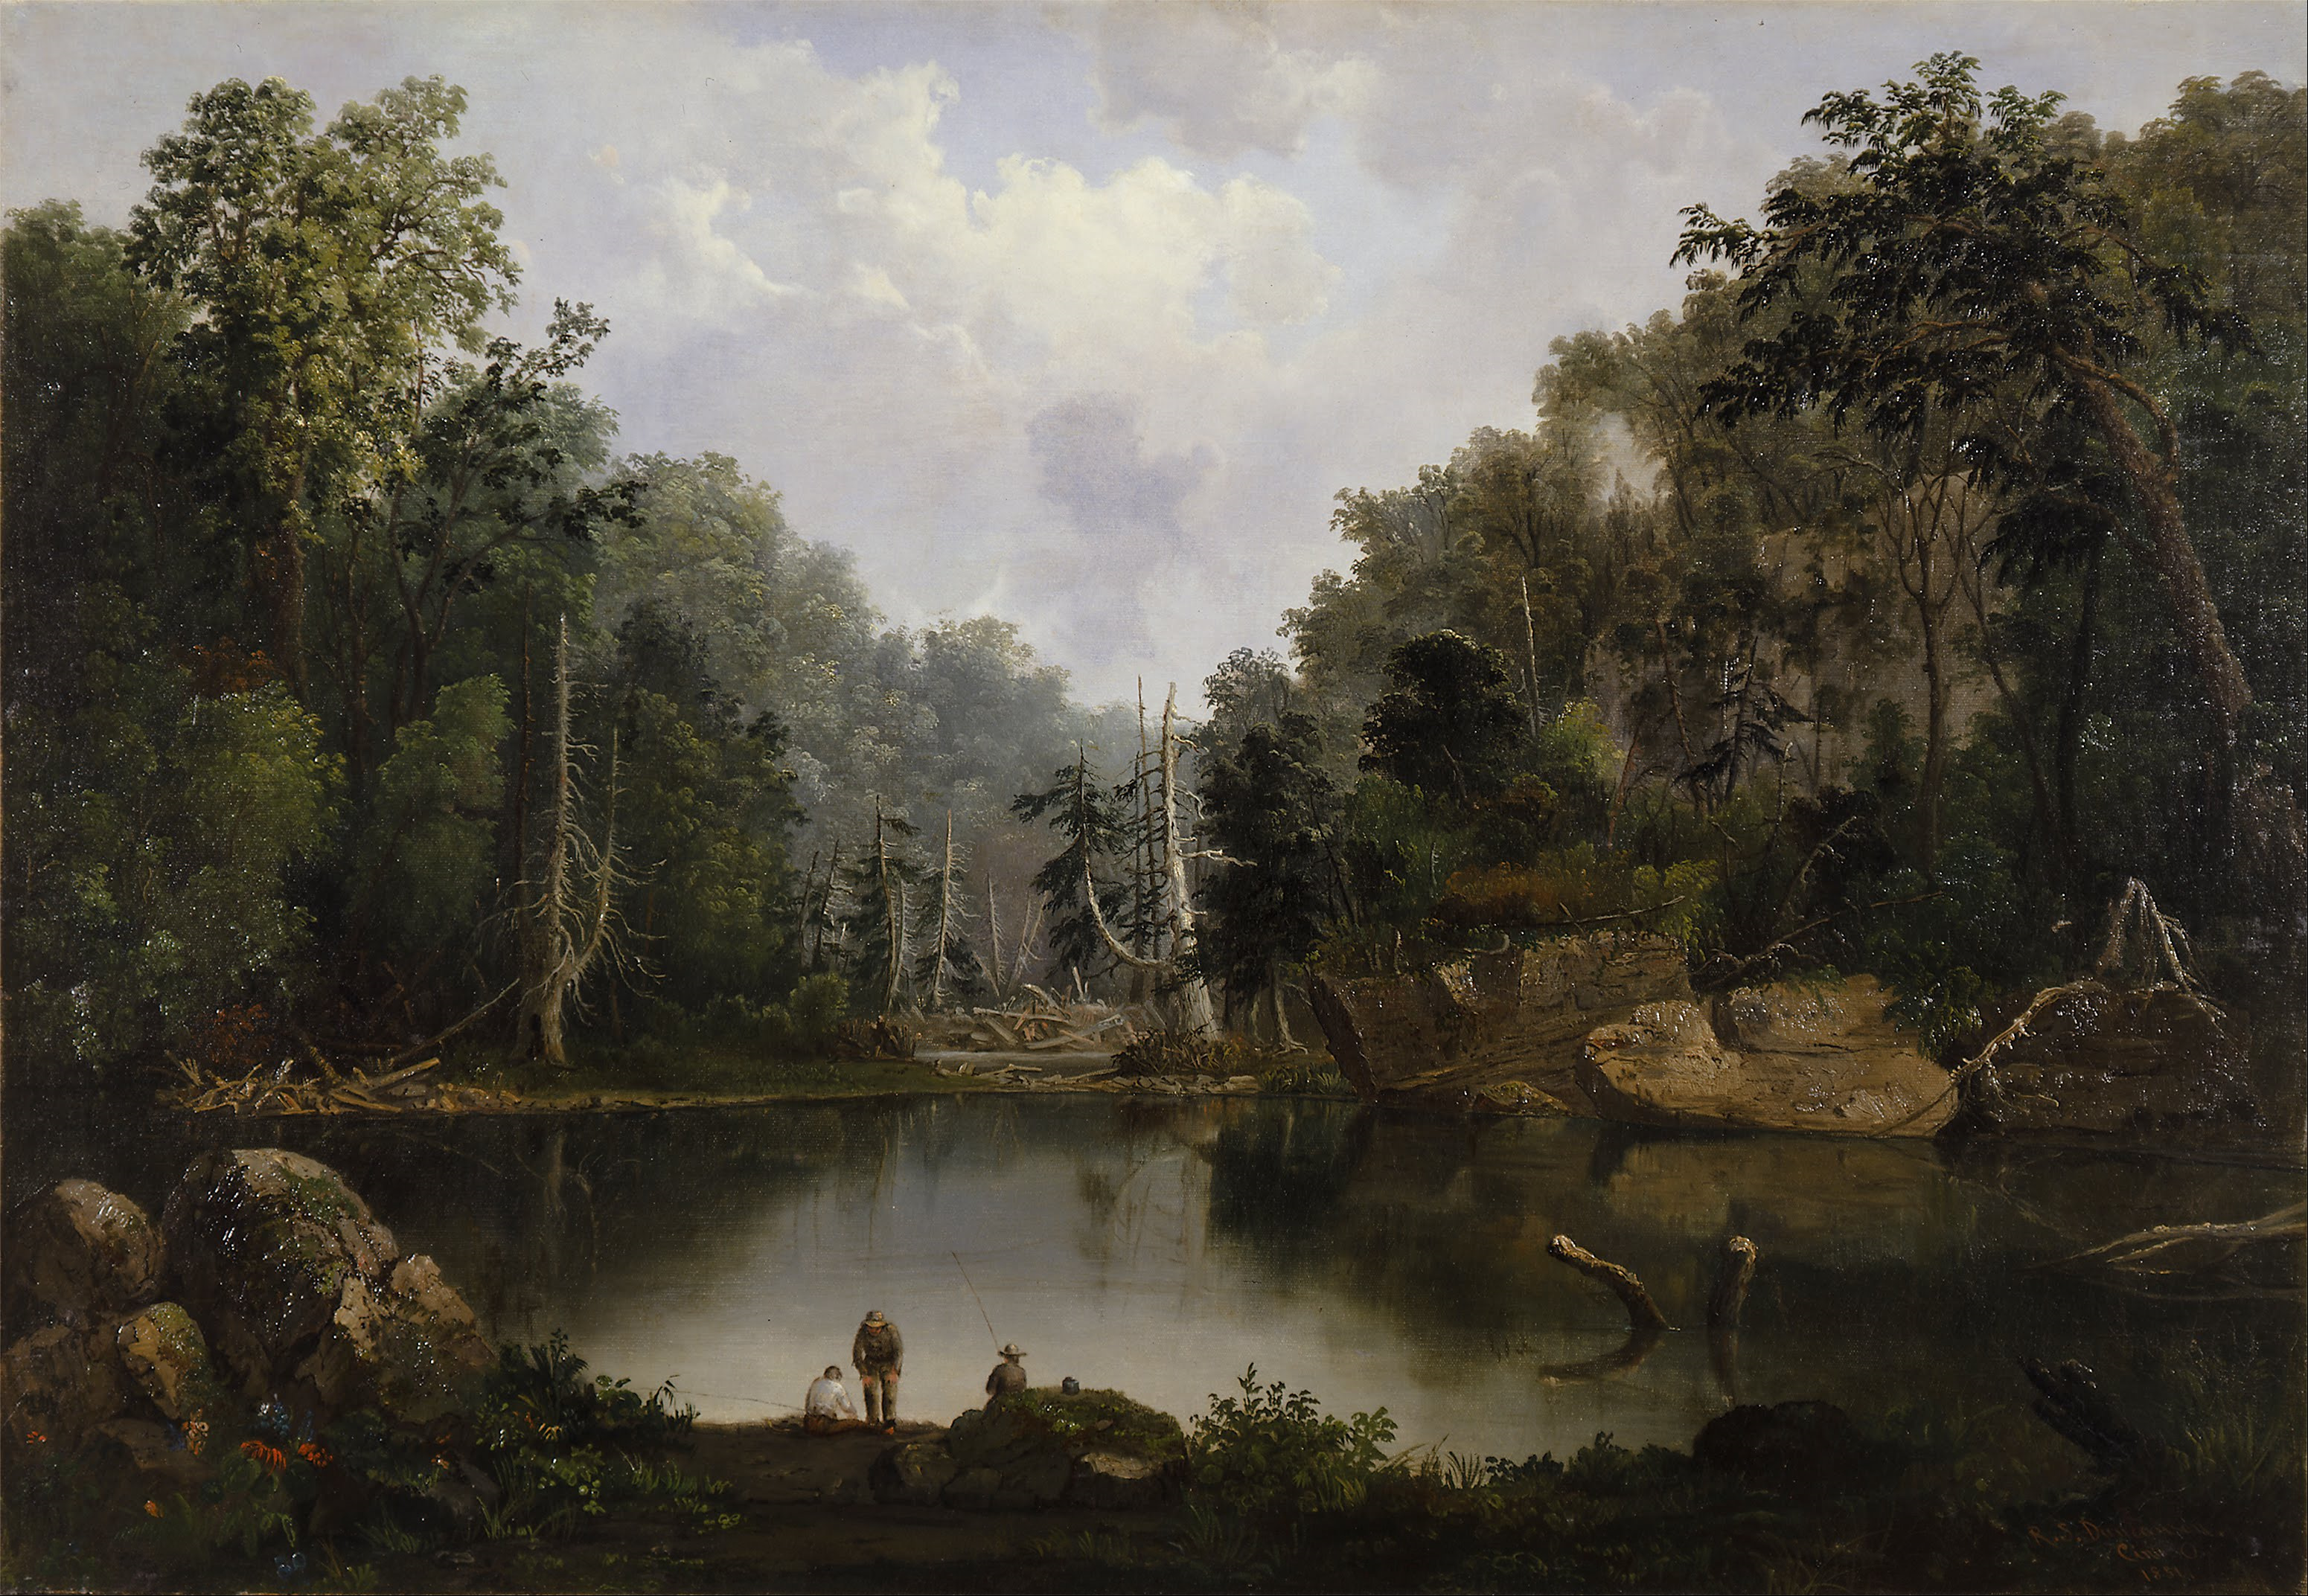 ブルーホール、洪水、リトル・マイアミ川 by Robert Duncanson - 1851年 - 72.4 x 105.4 cm 